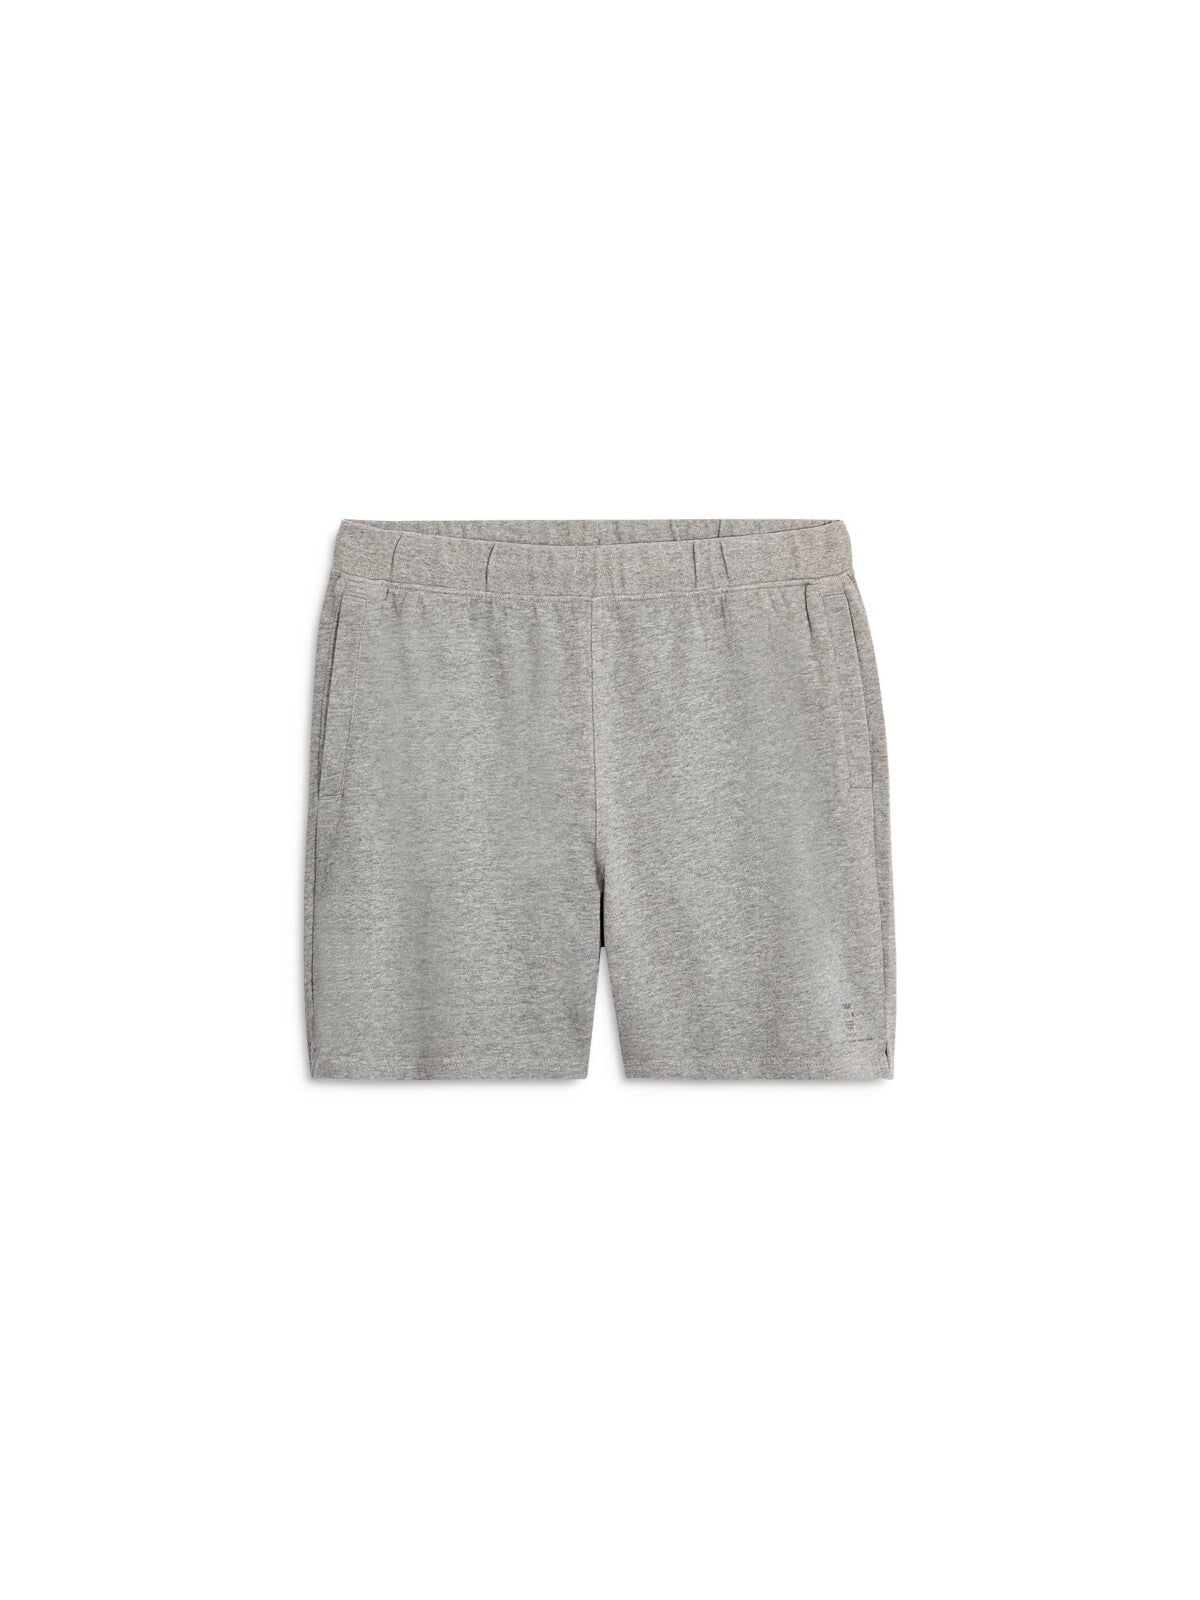 ONIA Mens Gray Drawstring Flat Frong Shorts XL